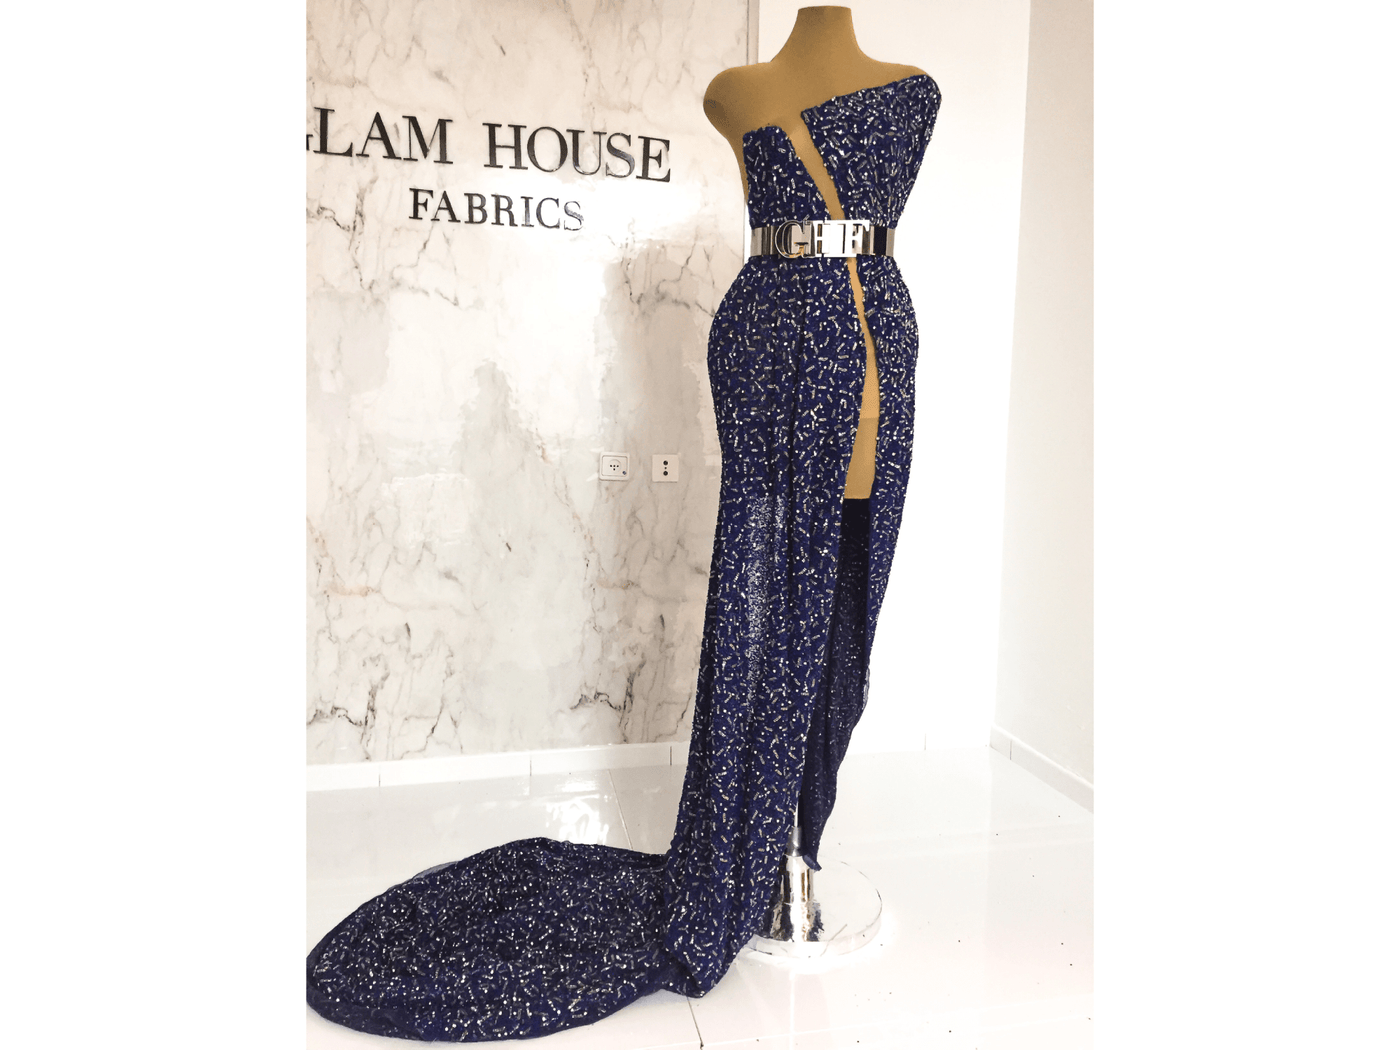 Vestido de cuentas hecho a mano con encaje azul con piedras de cristal | Glam House Fabrics